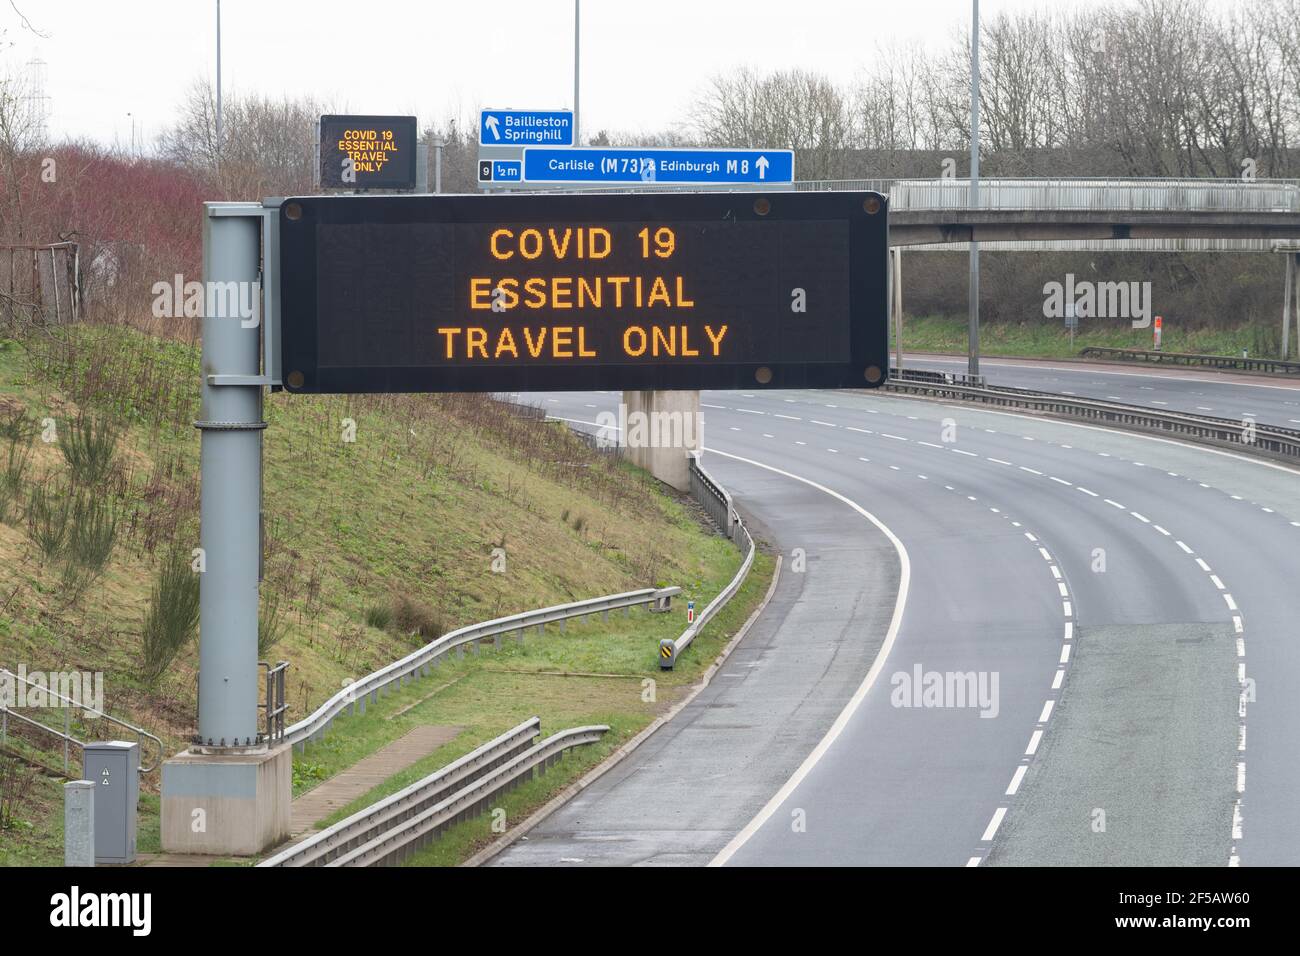 Glasgow, Scotland, UK - 26 marzo 2020: Autostrada M8 molto tranquilla, a volte vuota, con i conducenti ricordati via numerosi 'Covid-19 Essential Travel only' si Foto Stock